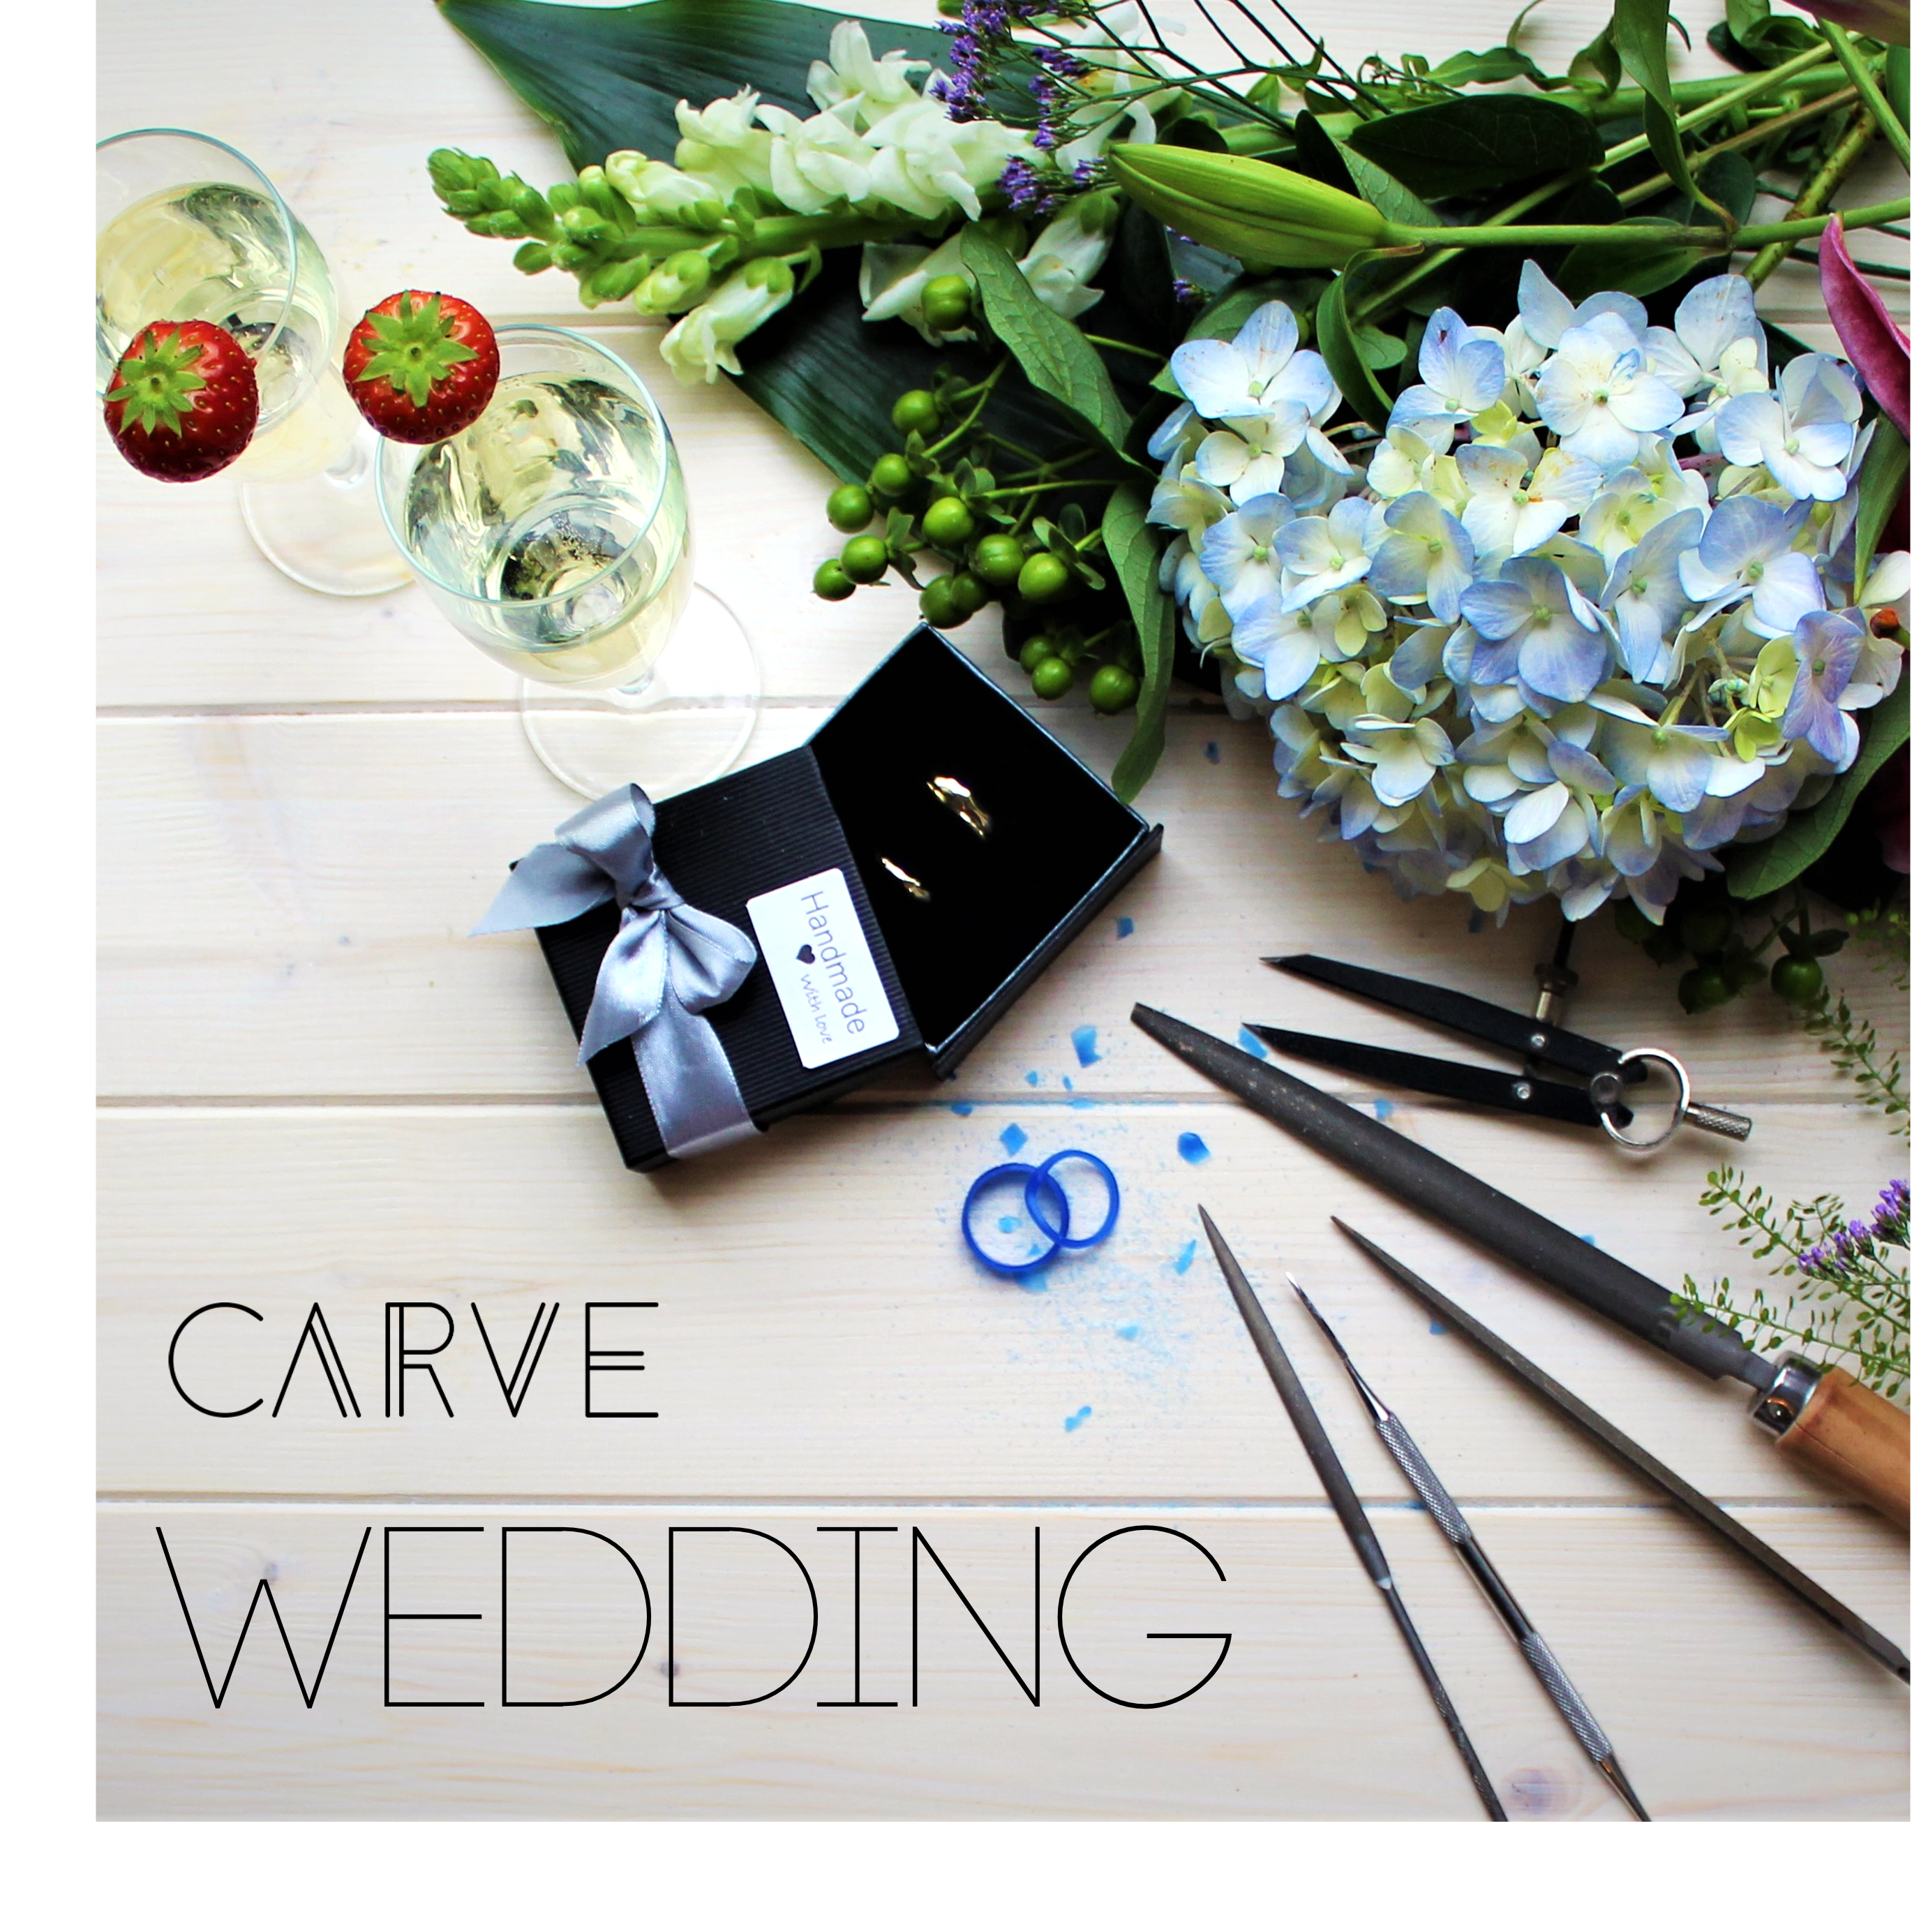 Wedding Ring carving Workshop